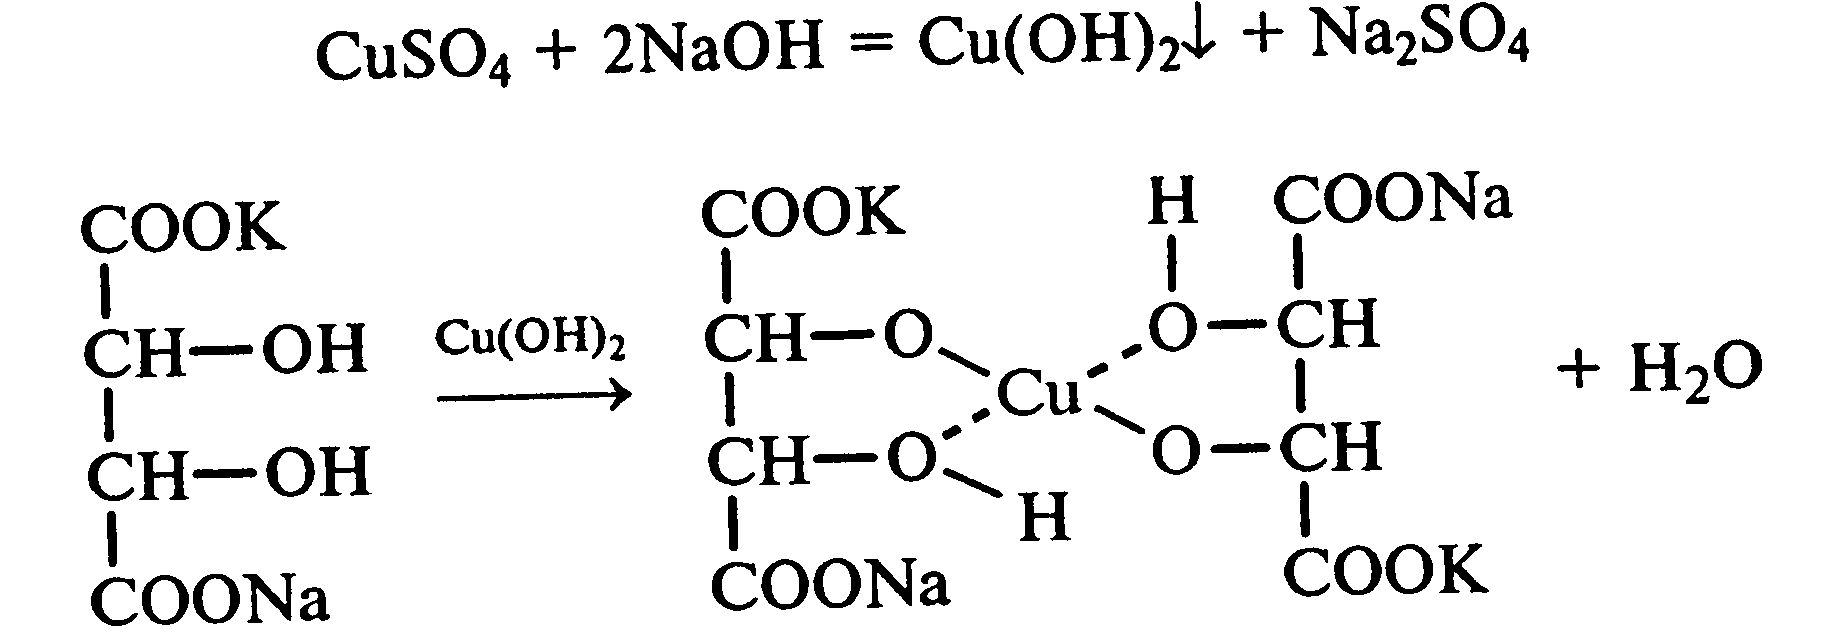 Гидроксид калия cuso4. Винная кислота гидроксид меди 2. Тартрат калия натрия и гидроксид меди 2. Тартрат калия и гидроксид меди. Тарьат калия гидроксид меди.